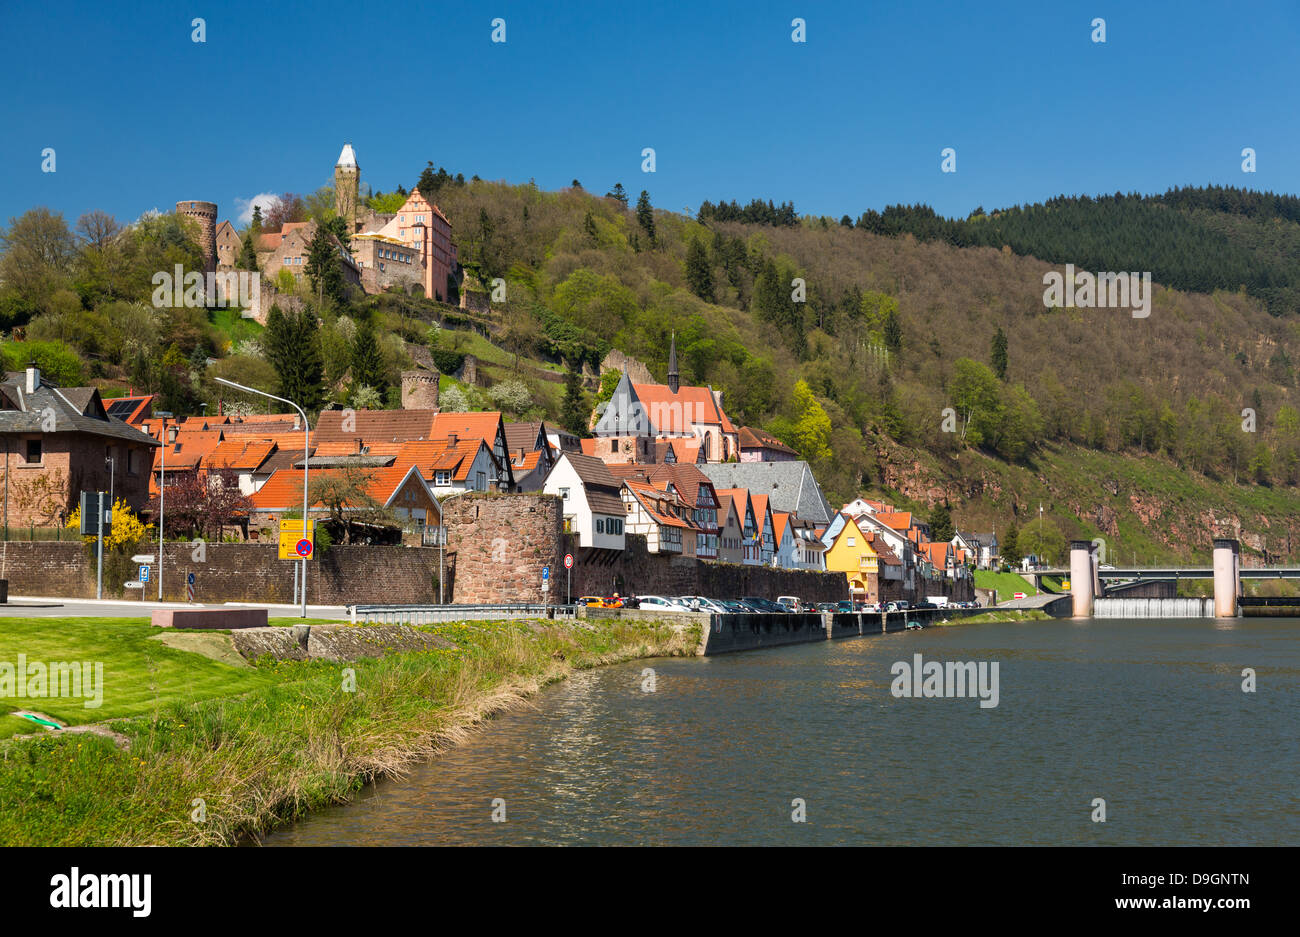 Germania - Borgo antico villaggio di Hirschhorn in Assia distretto di Germania sulle rive del fiume Neckar Foto Stock